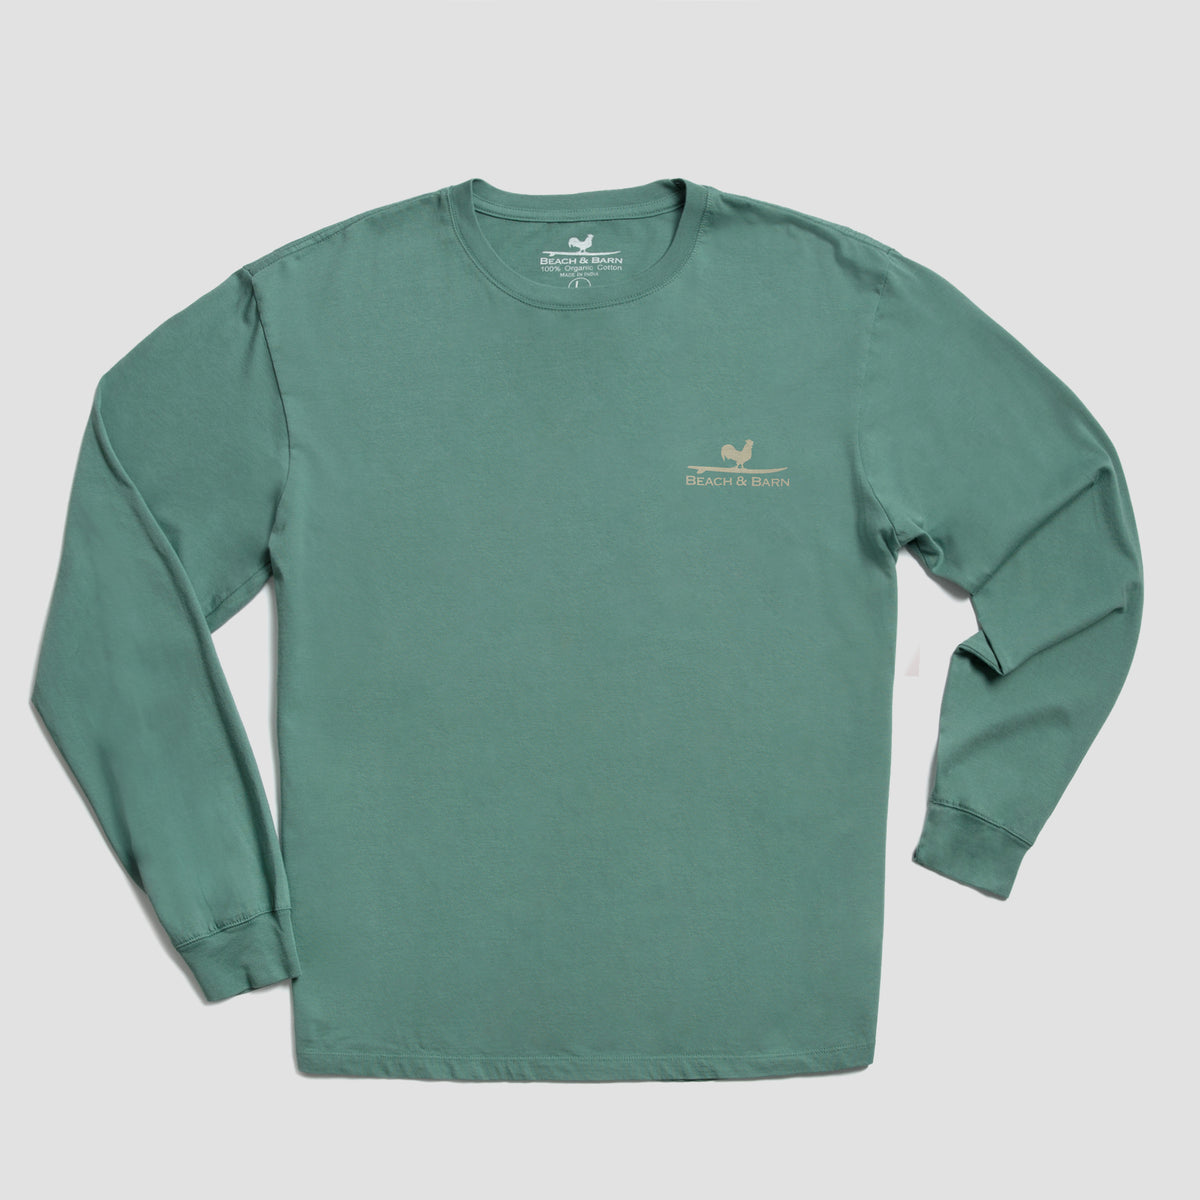 Sale - Coastal County Line Long Sleeve Tee Shirt